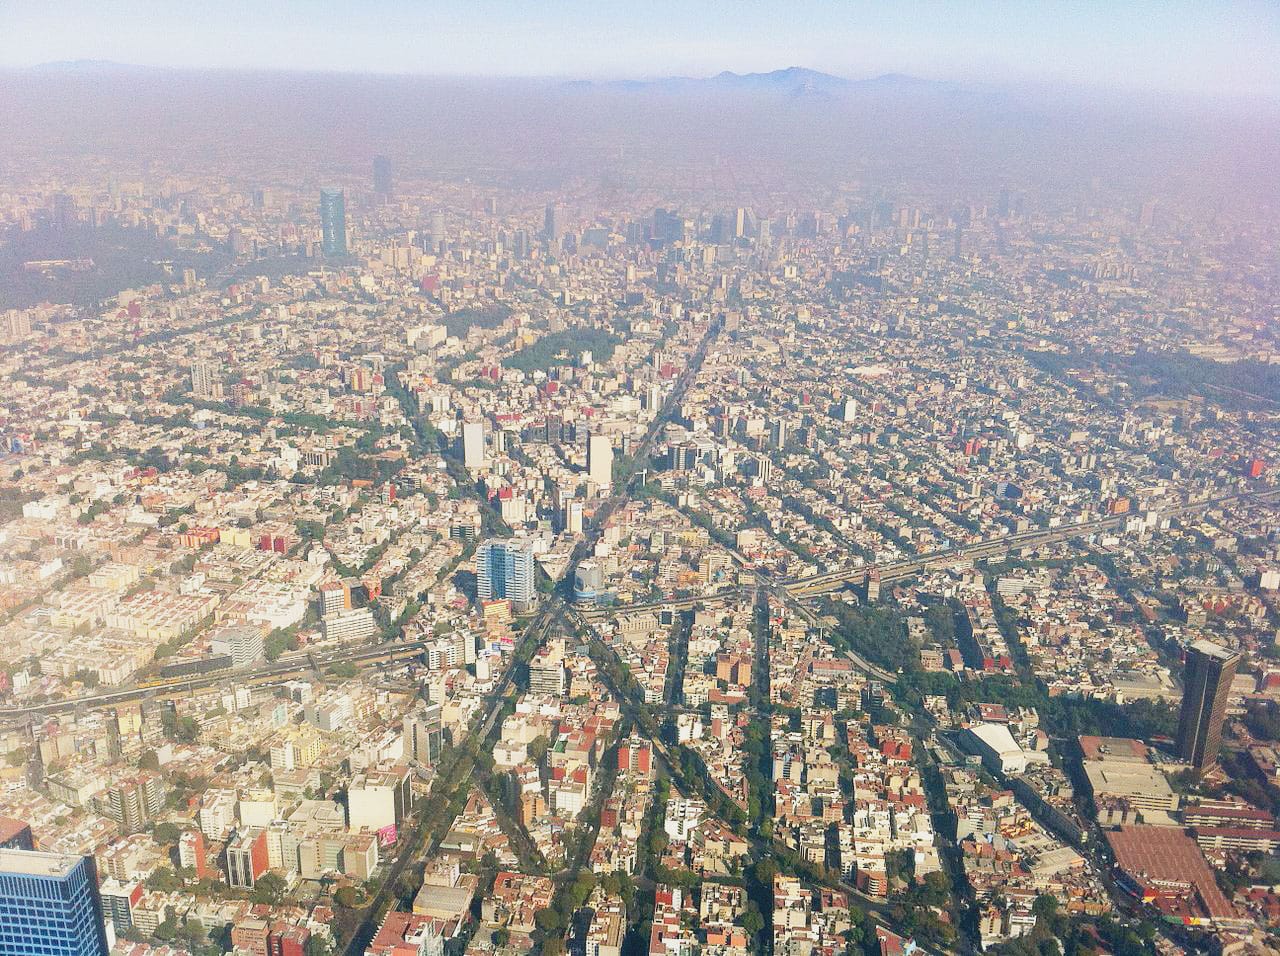 Samantha explores La Condesa neighborhood in Mexico City